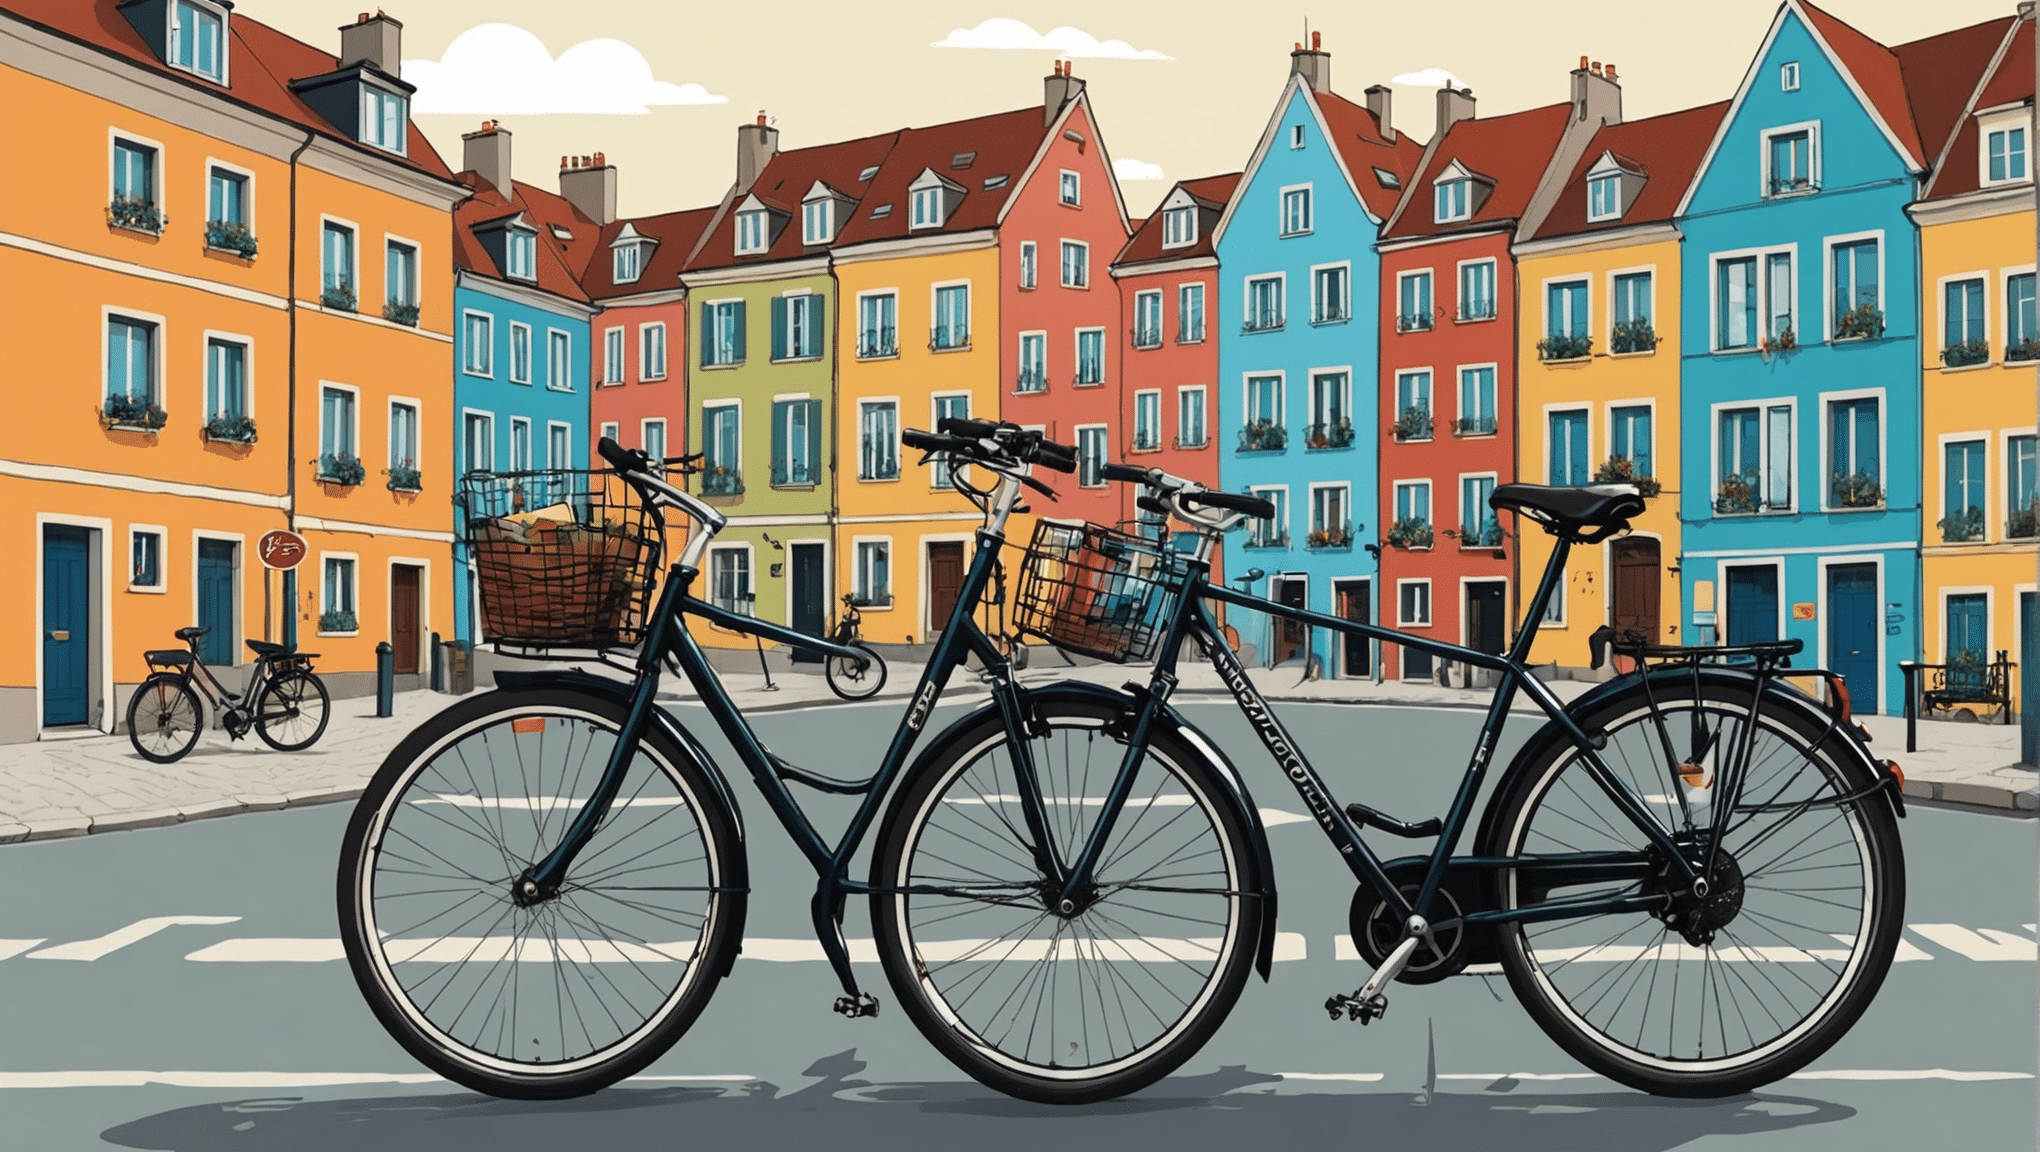 descubra os destinos imperdíveis para os amantes dos passeios de bicicleta na Europa com o nosso guia completo. paisagens deslumbrantes e experiências únicas esperam por você!